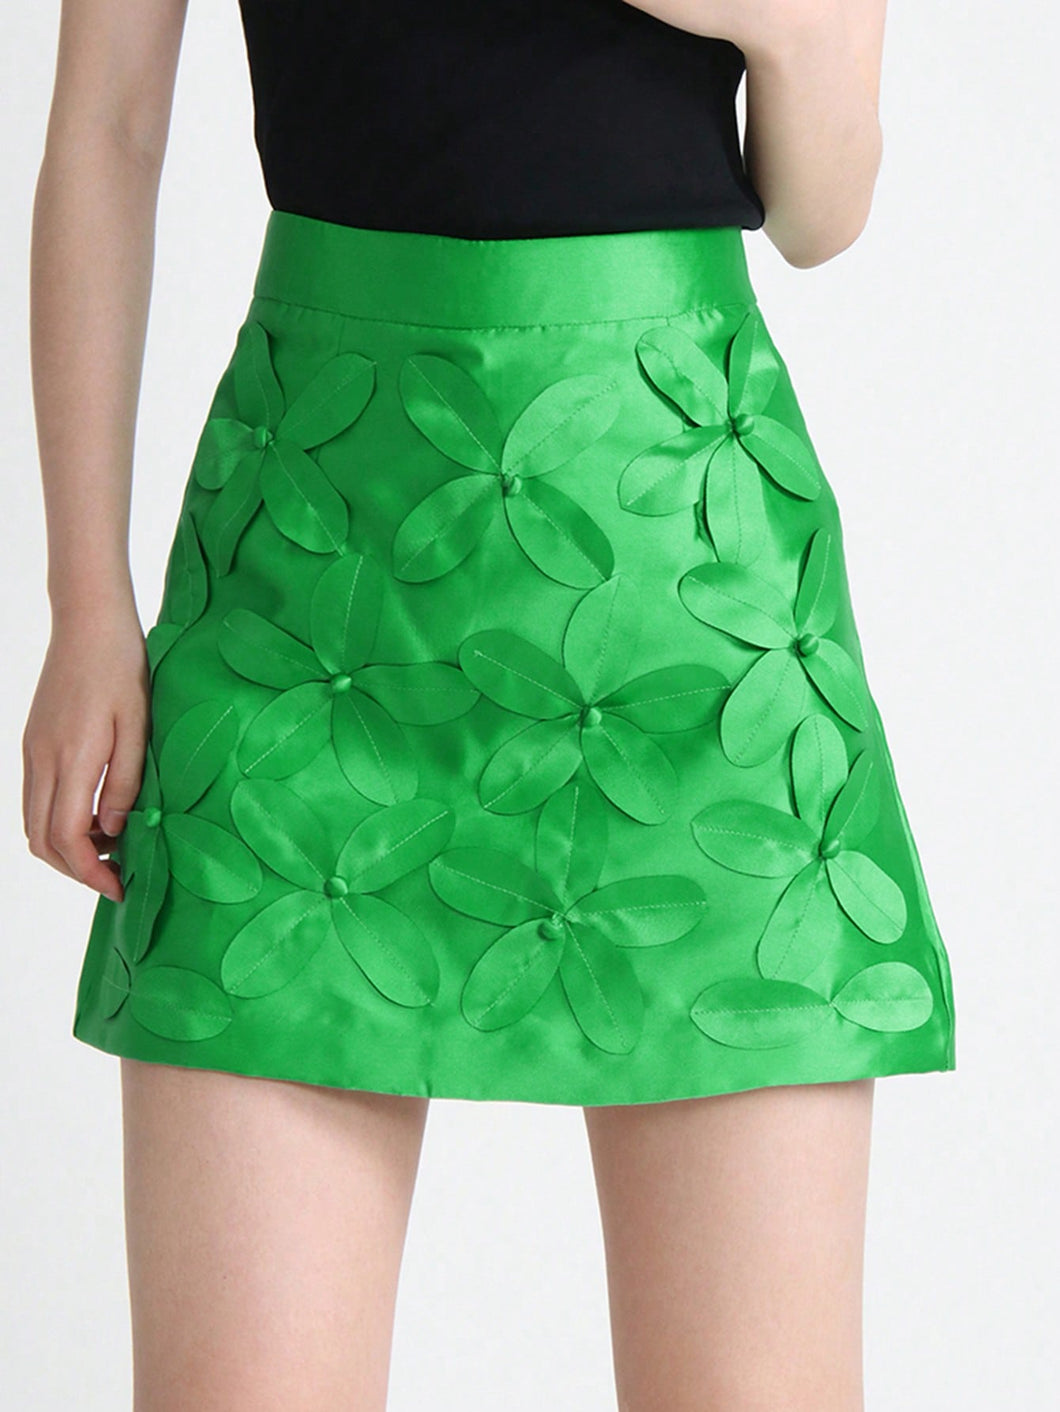 High Waist Floral Appliques Skirt